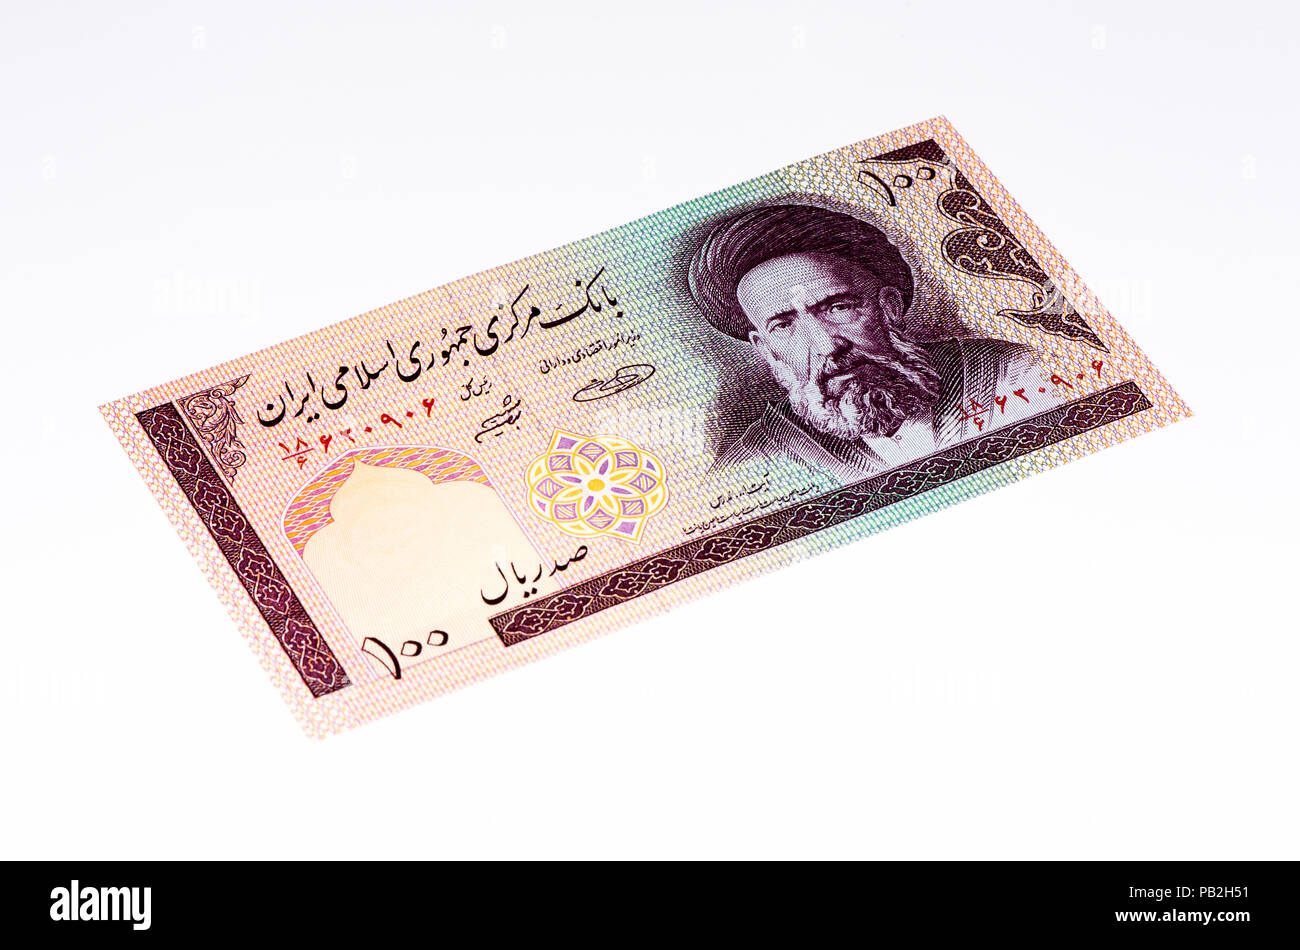 100 Iranische Rials Bank Note Rial Ist Die Nationale Wahrung Der Iran Stockfotografie Alamy